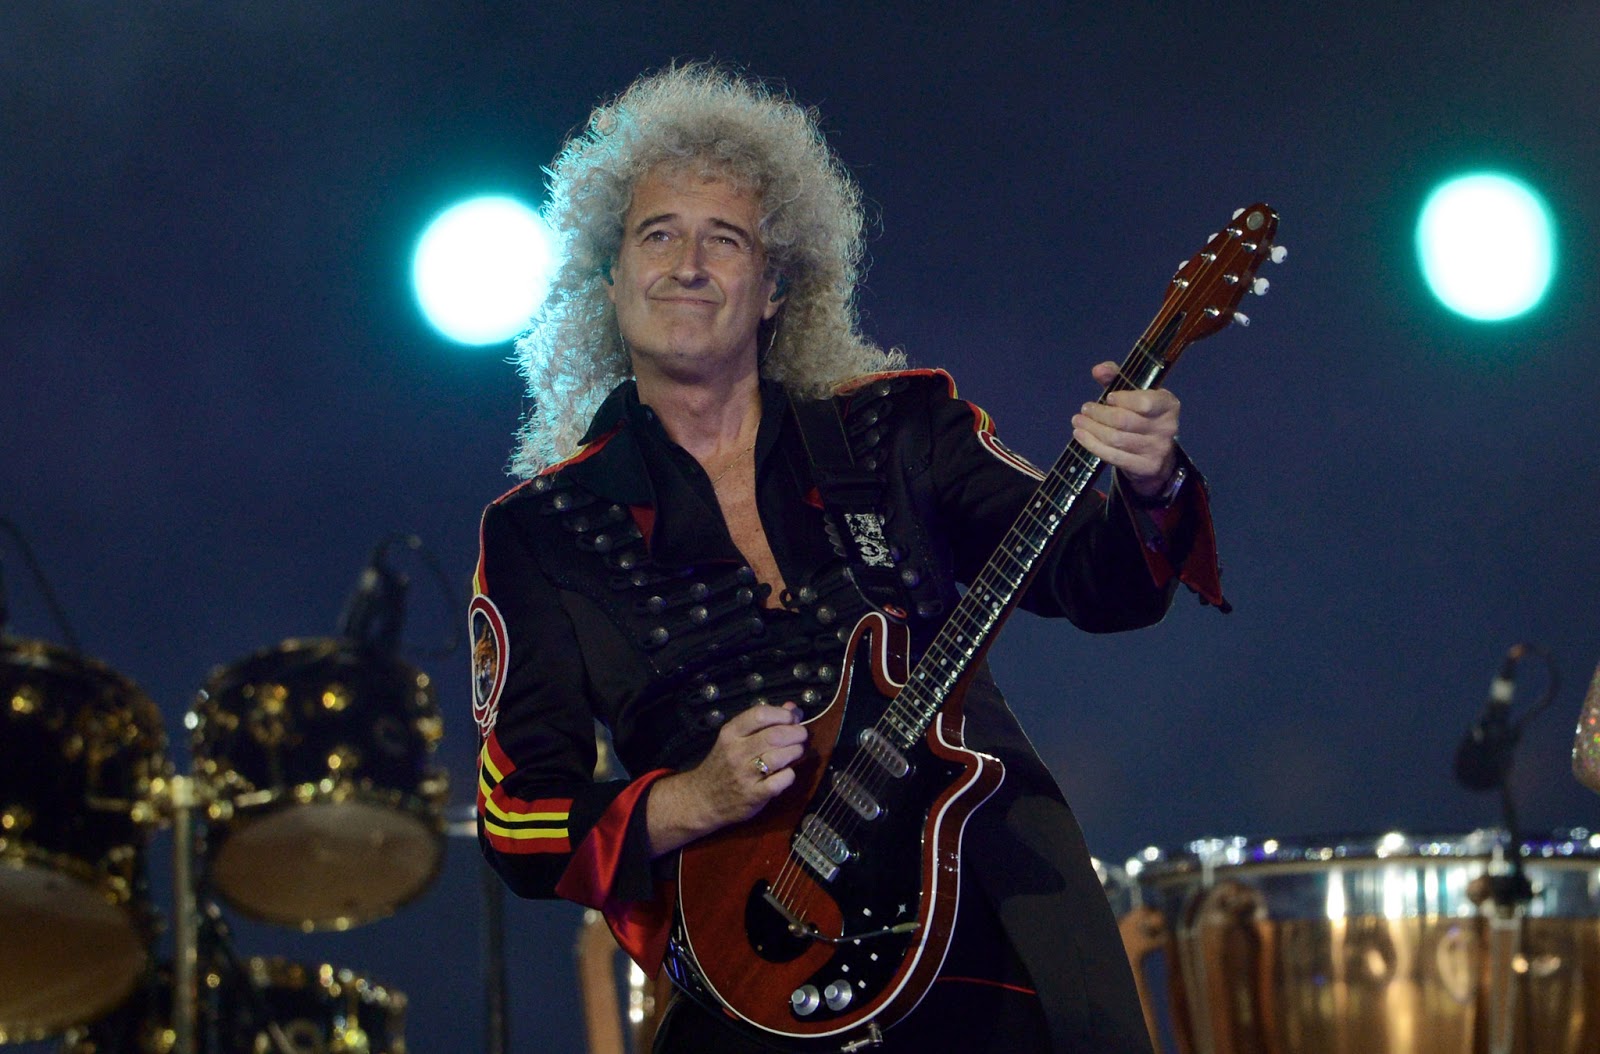 Brian May - Queen<br /><br />Brian May, a Queen legendás gitárosának légies játéka néha mintha a csillagközi térből érkezne. Nos, May egyetemi éveiben a csillagközi porról írt doktori disszertációján dolgozott, ám végül a zene mellett döntve félbehagyta a tudományos munkáját. 2007-ben mégis megszerezte doktori címet az Imperial College-ban.